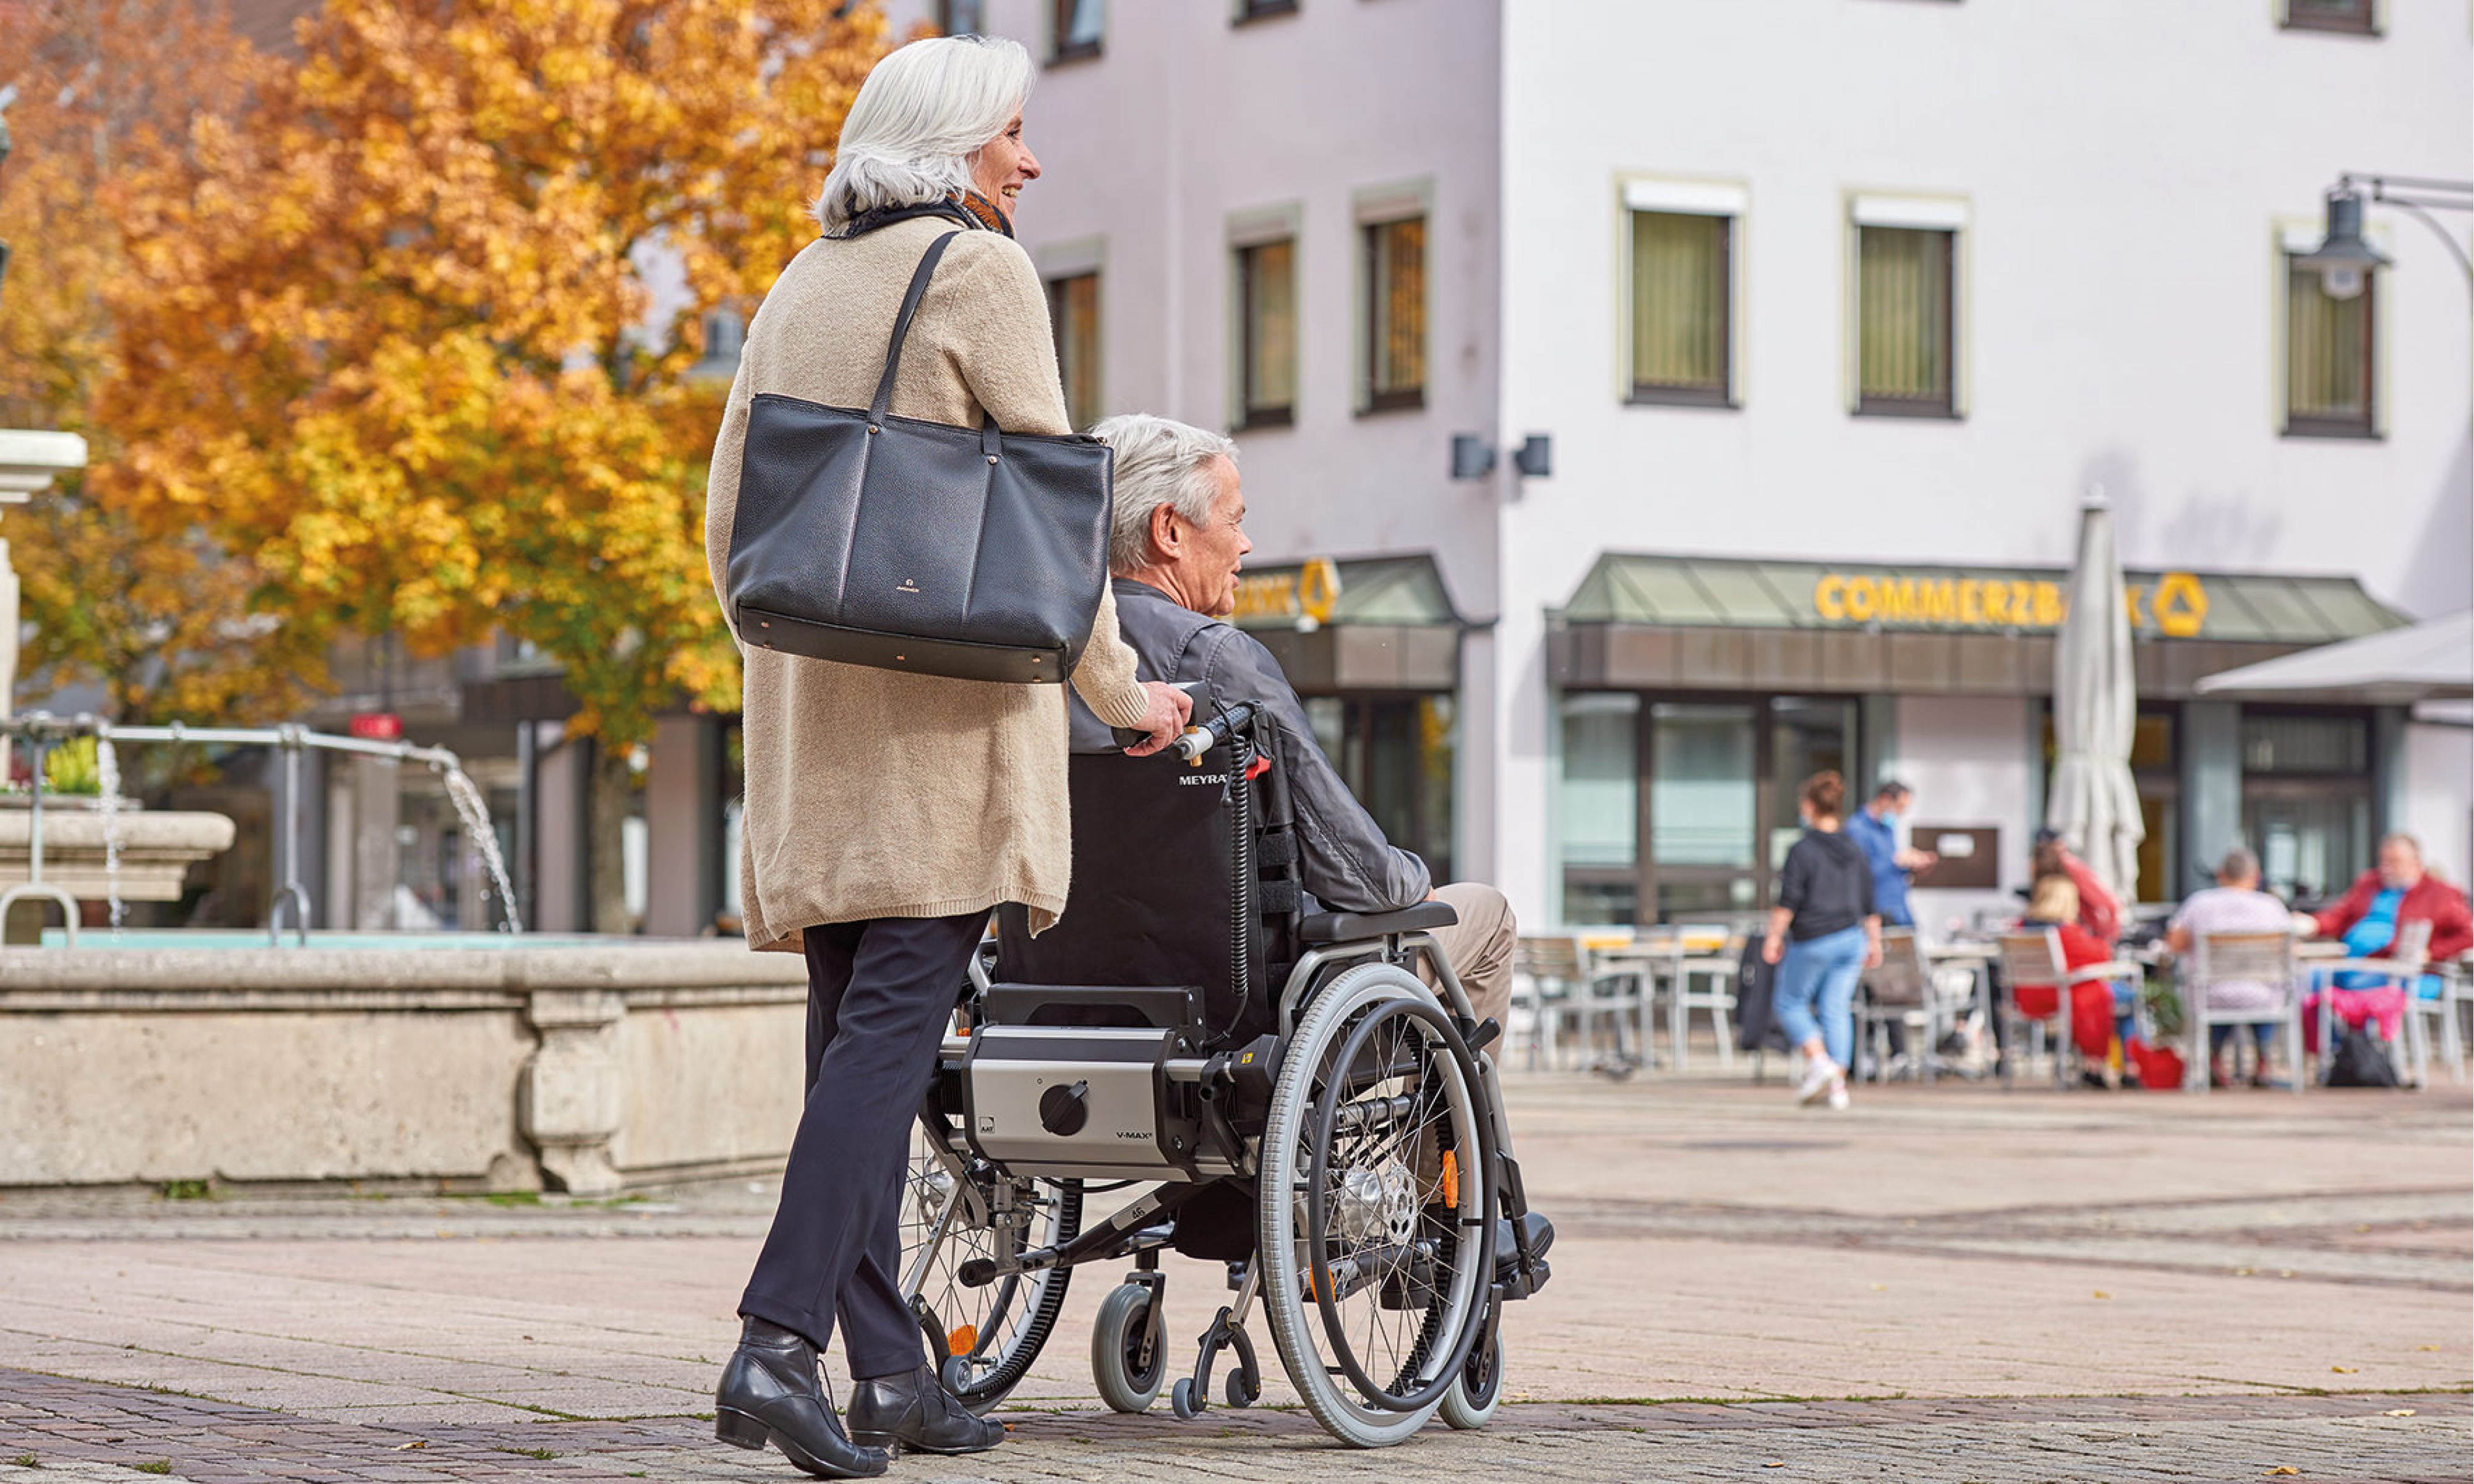 Das Bild zeigt eine ältere Frau mit grauen Haaren und großer Handtasche, wie sie einen älteren Mann mit ebenfalls grauen Haaren an einem Herbsttag in seinem manuellen Rollstuhl durch die Stadt schiebt. Am Rollstuhl befindet sich unterhalb der Rückenlehne ein AAT-Zusatzantrieb V-MAX2, welcher sie beim Schieben und Bremsen des Rollstuhls unterstützt. Sie fahren auf einem Boden, der mit unterschiedlichen Pflastersteinen ausgestattet ist.